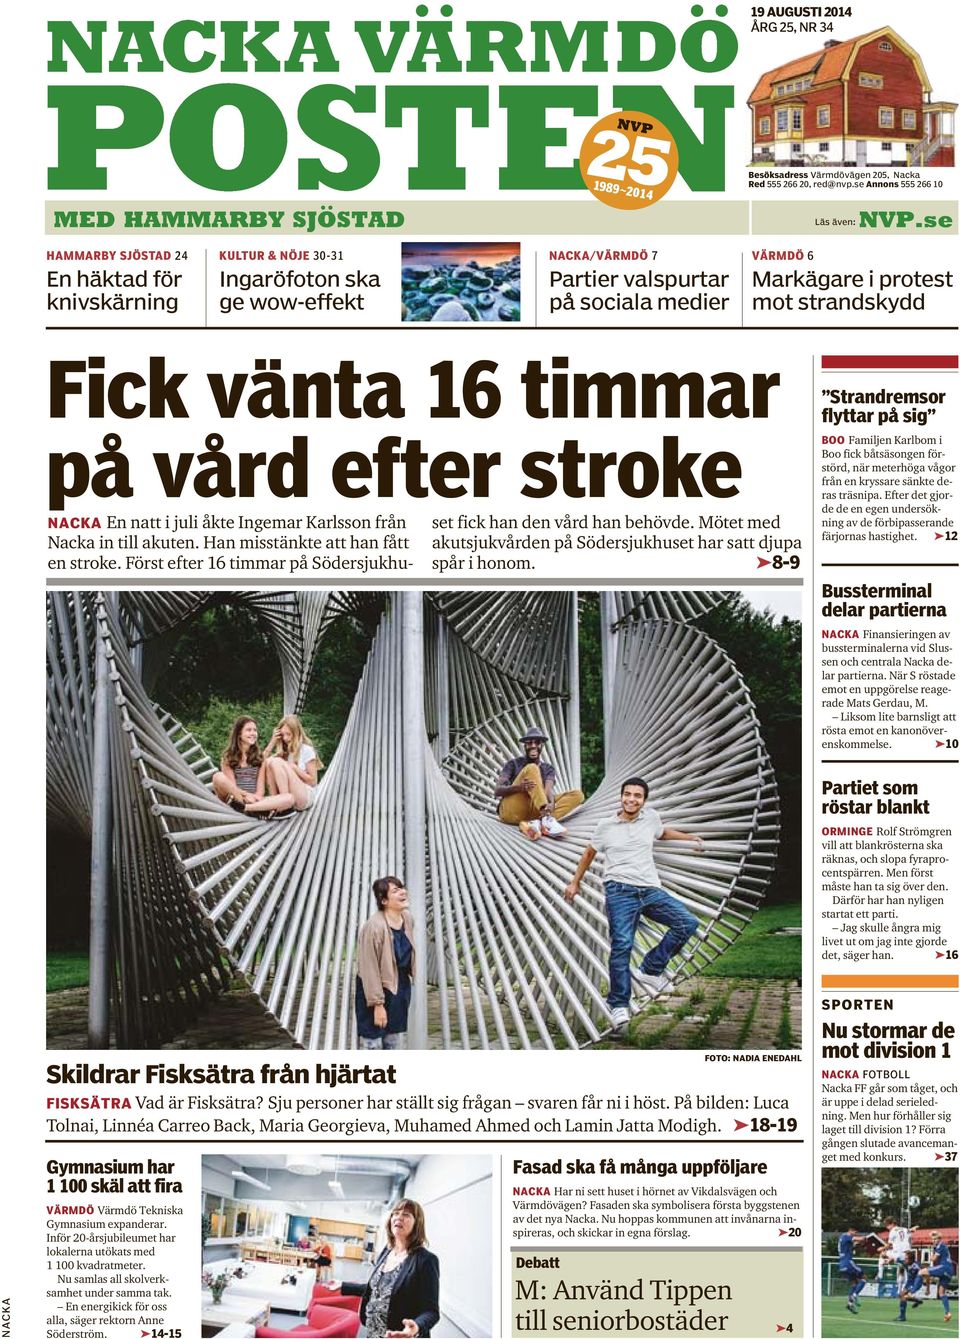 Fick vänta 16 timmar på vård efter stroke NACKA En natt i juli åkte Ingemar Karlsson från Nacka in till akuten. Han misstänkte att han fått en stroke.